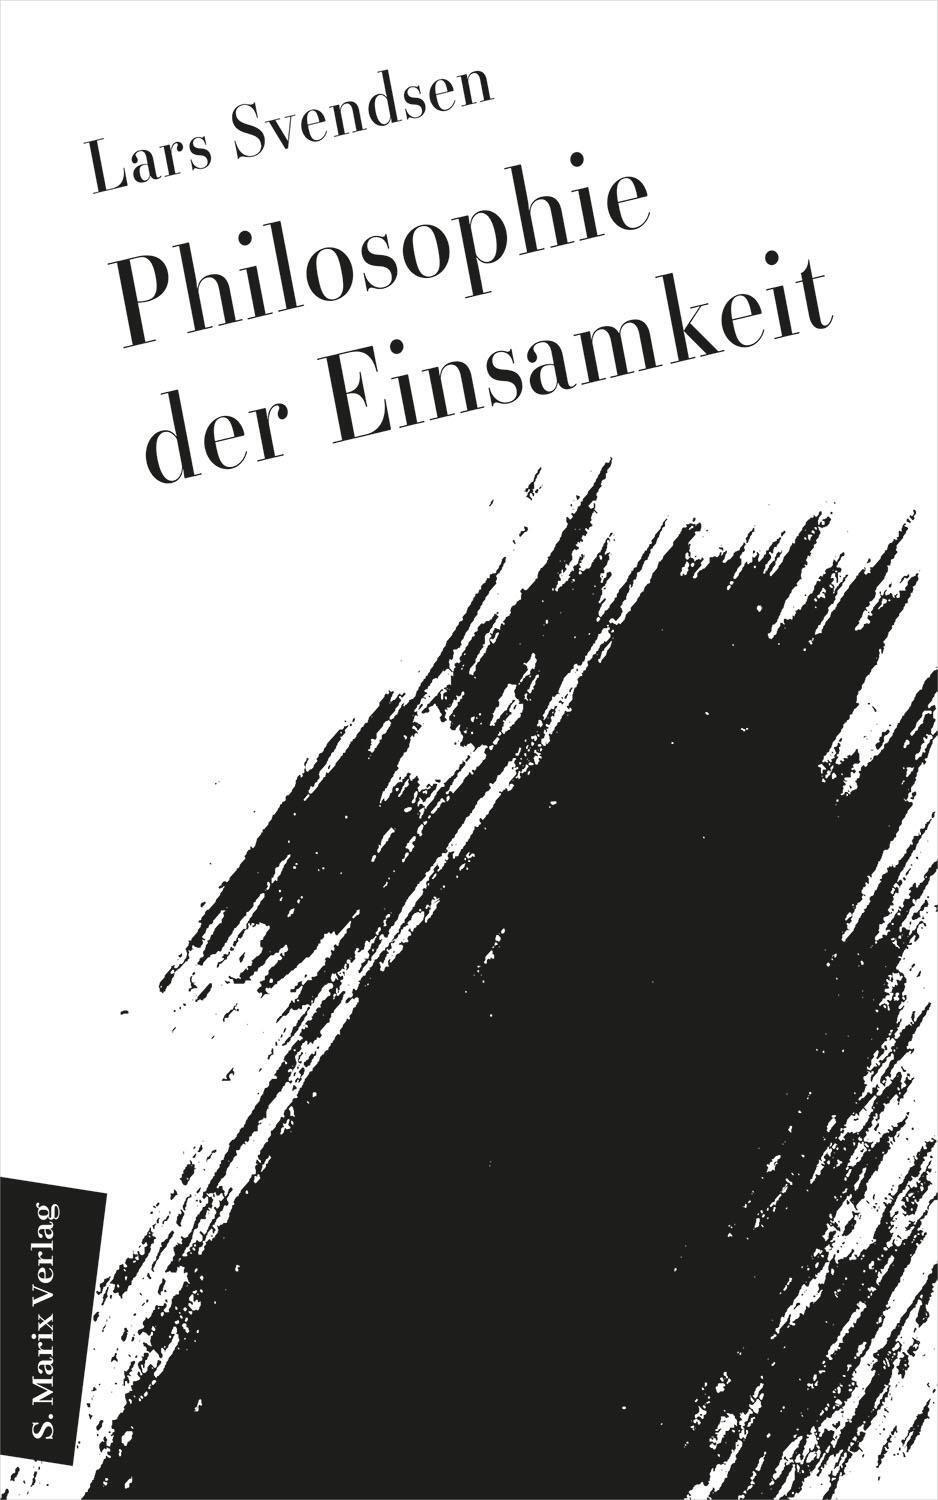 Philosophie der Einsamkeit - Svendsen, Lars Fredrik Händler